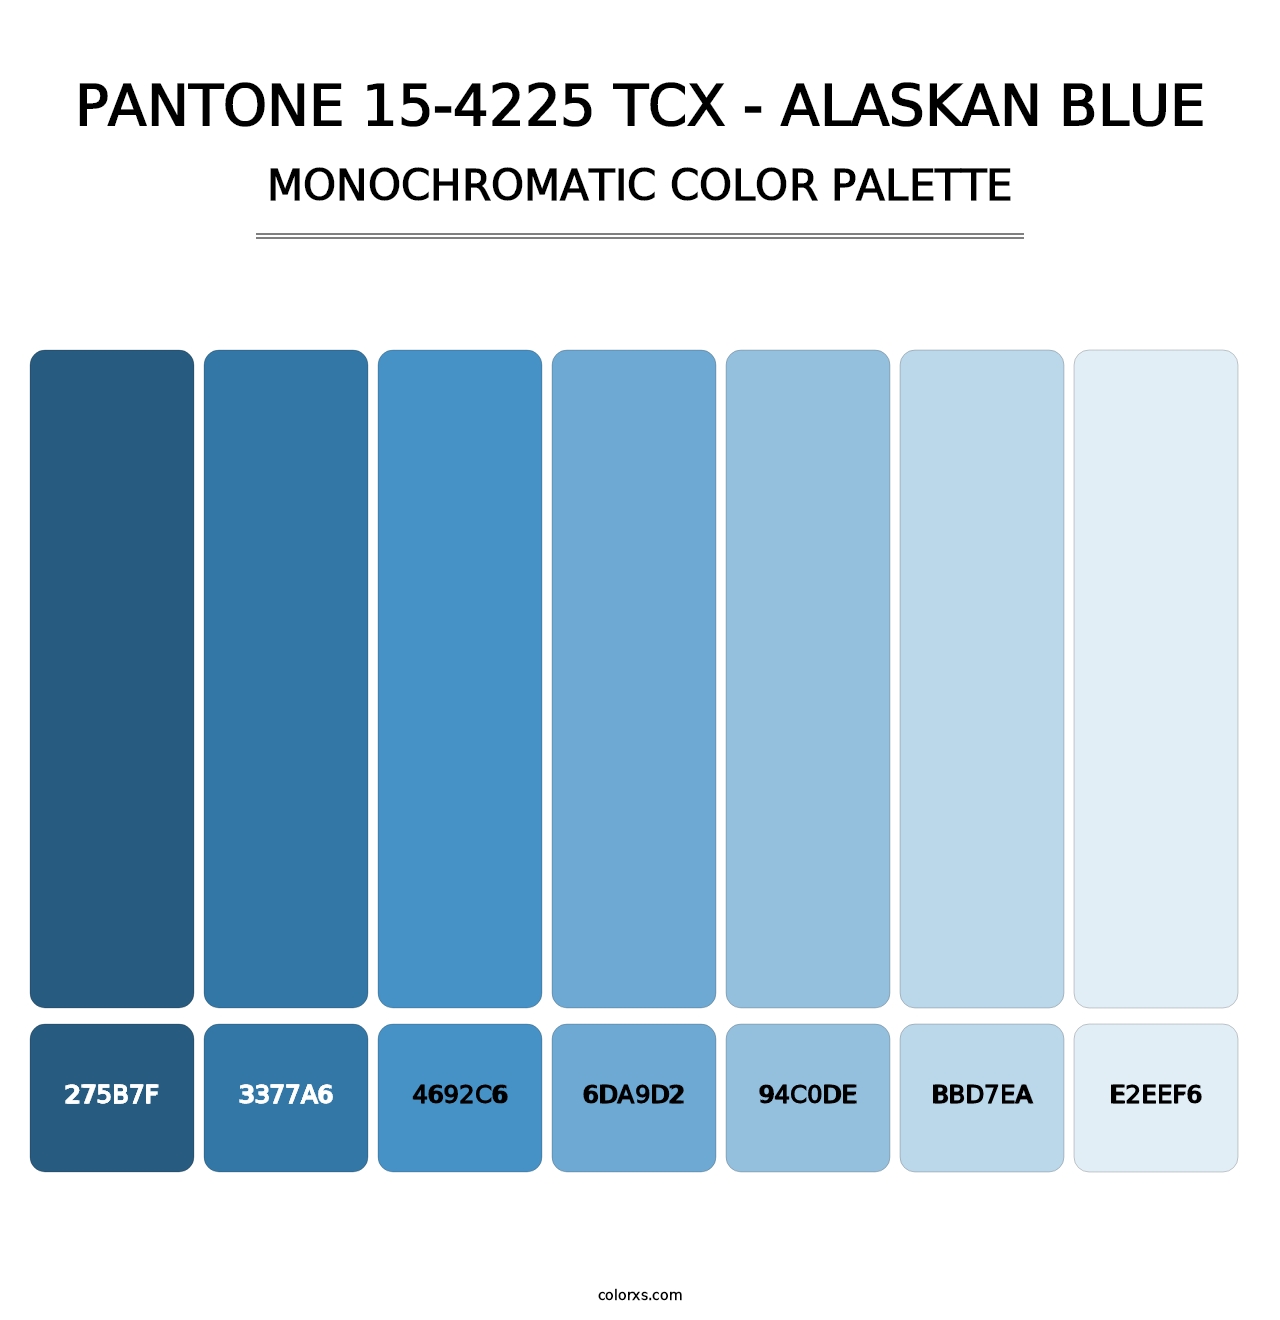 PANTONE 15-4225 TCX - Alaskan Blue - Monochromatic Color Palette